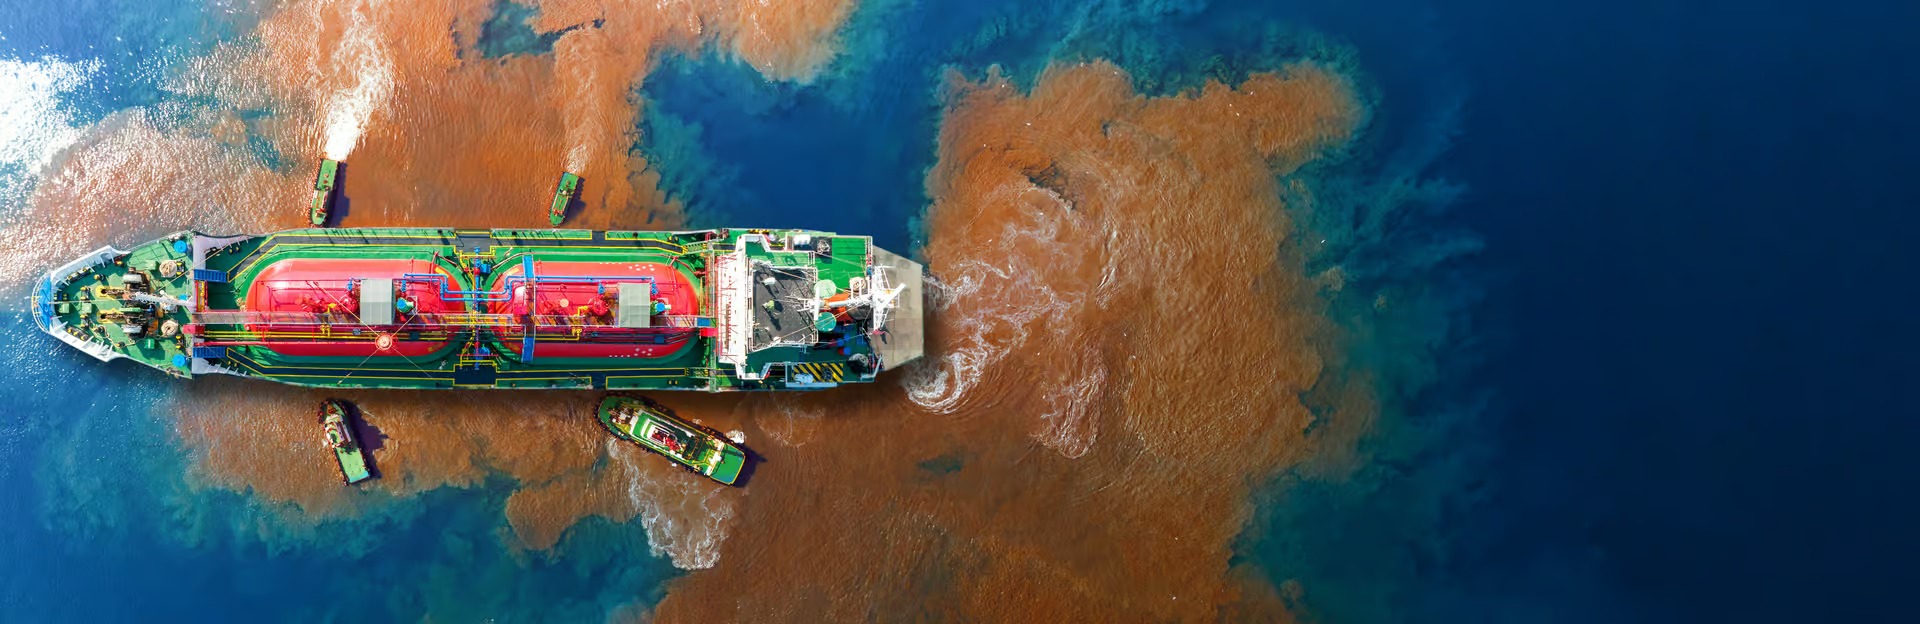 petrolier fuite biodiversite mar - Endlich ein historisches Abkommen zum Schutz der internationalen Gewässer!